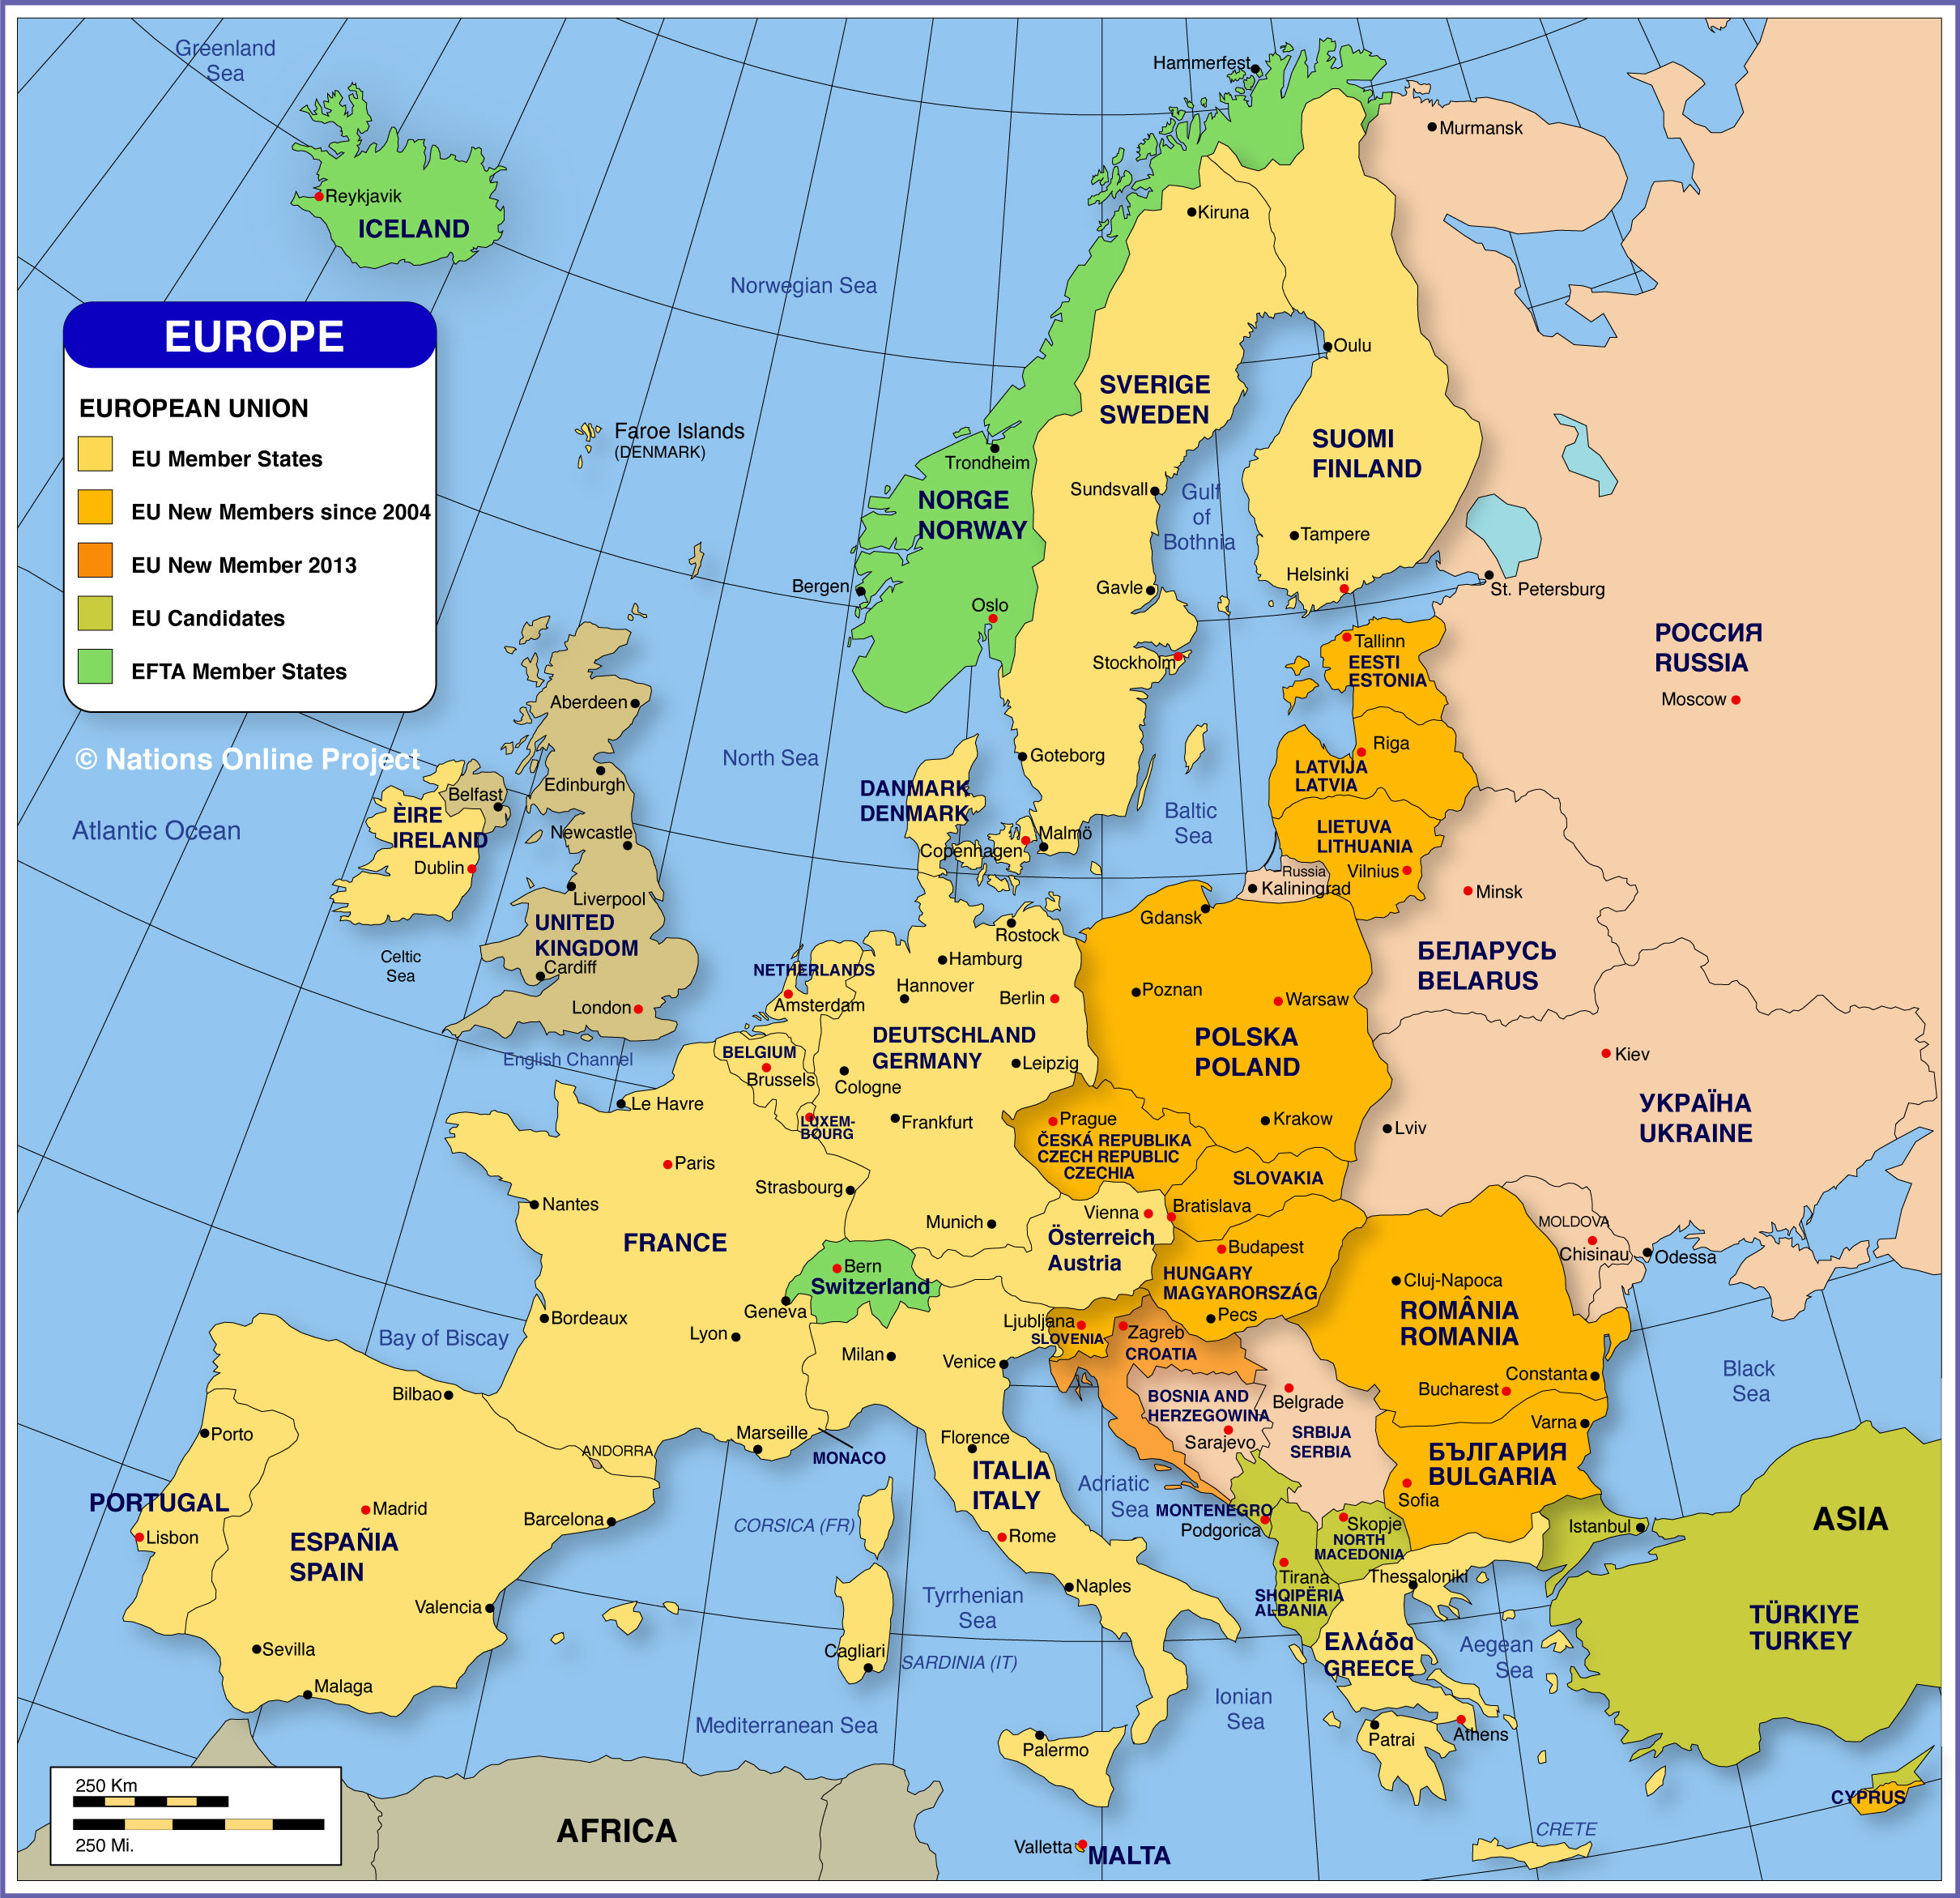 Bản đồ châu Âu khổ lớn tiếng Việt năm 2024: Những hình ảnh tuyệt đẹp về châu Âu tràn ngập trên bản đồ khổ lớn tiếng Việt mới nhất 2024! Với những chi tiết rõ nét và chính xác, bản đồ sẽ giúp bạn định vị vị trí các quốc gia và thành phố châu Âu một cách dễ dàng. Đừng bỏ lỡ cơ hội khám phá những điều thú vị về châu Âu qua bản đồ tiếng Việt 2024!